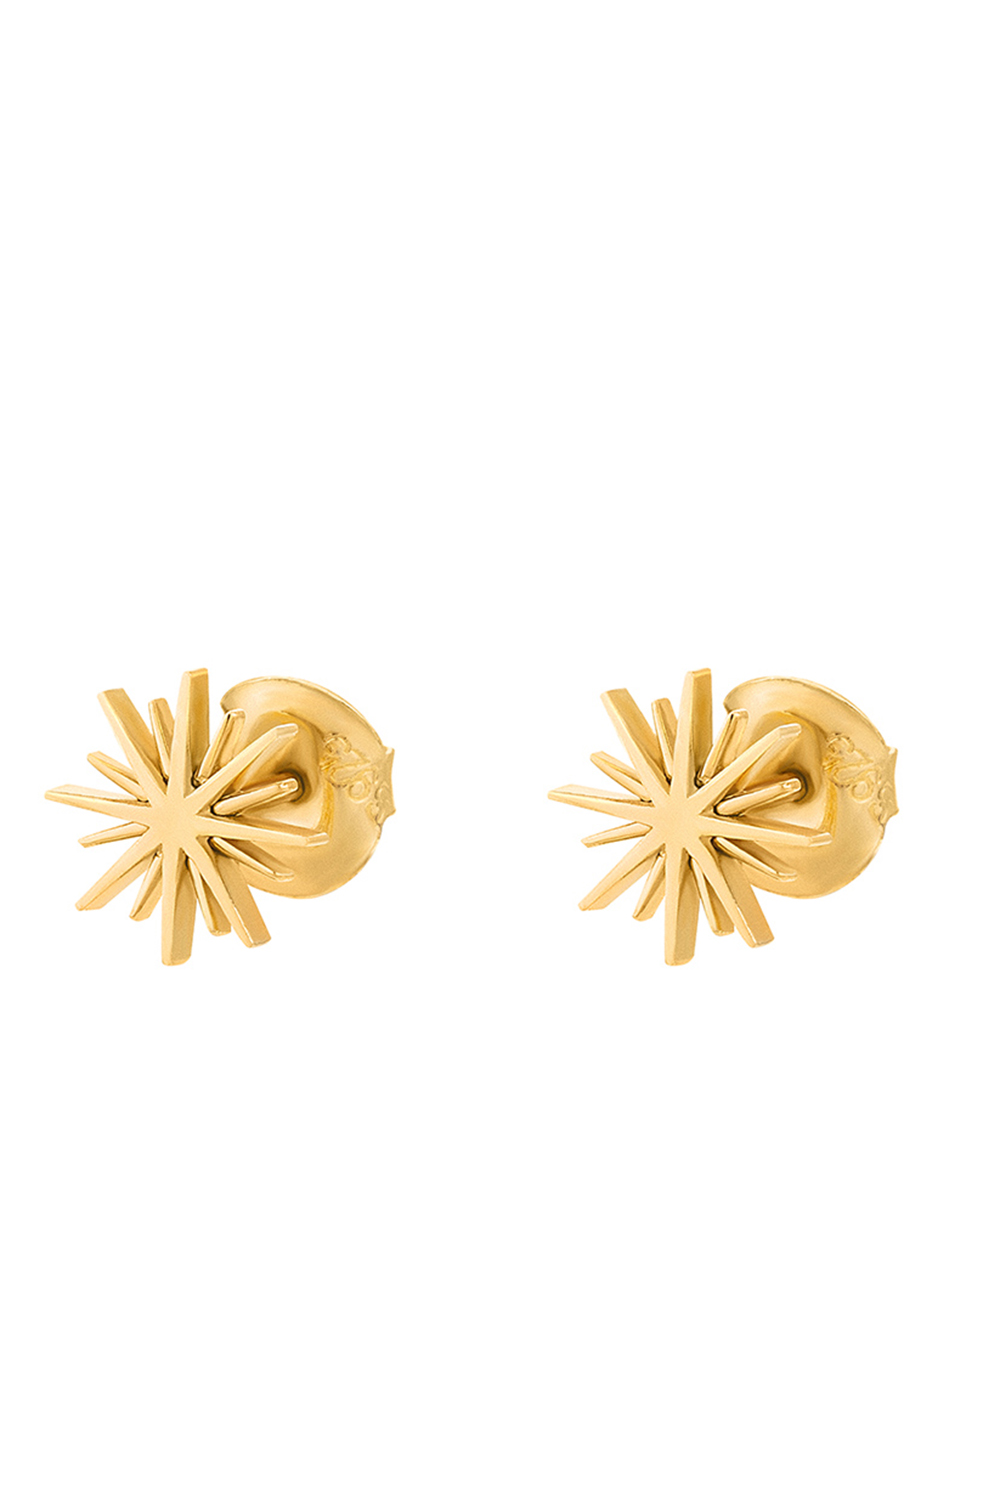 Γυναικεία/Αξεσουάρ/Κοσμήματα/Σκουλαρίκια FOLLI FOLLIE - Γυναικεία ασημένια σκουλαρίκια FOLLI FOLLIE WISHING ON χρυσά